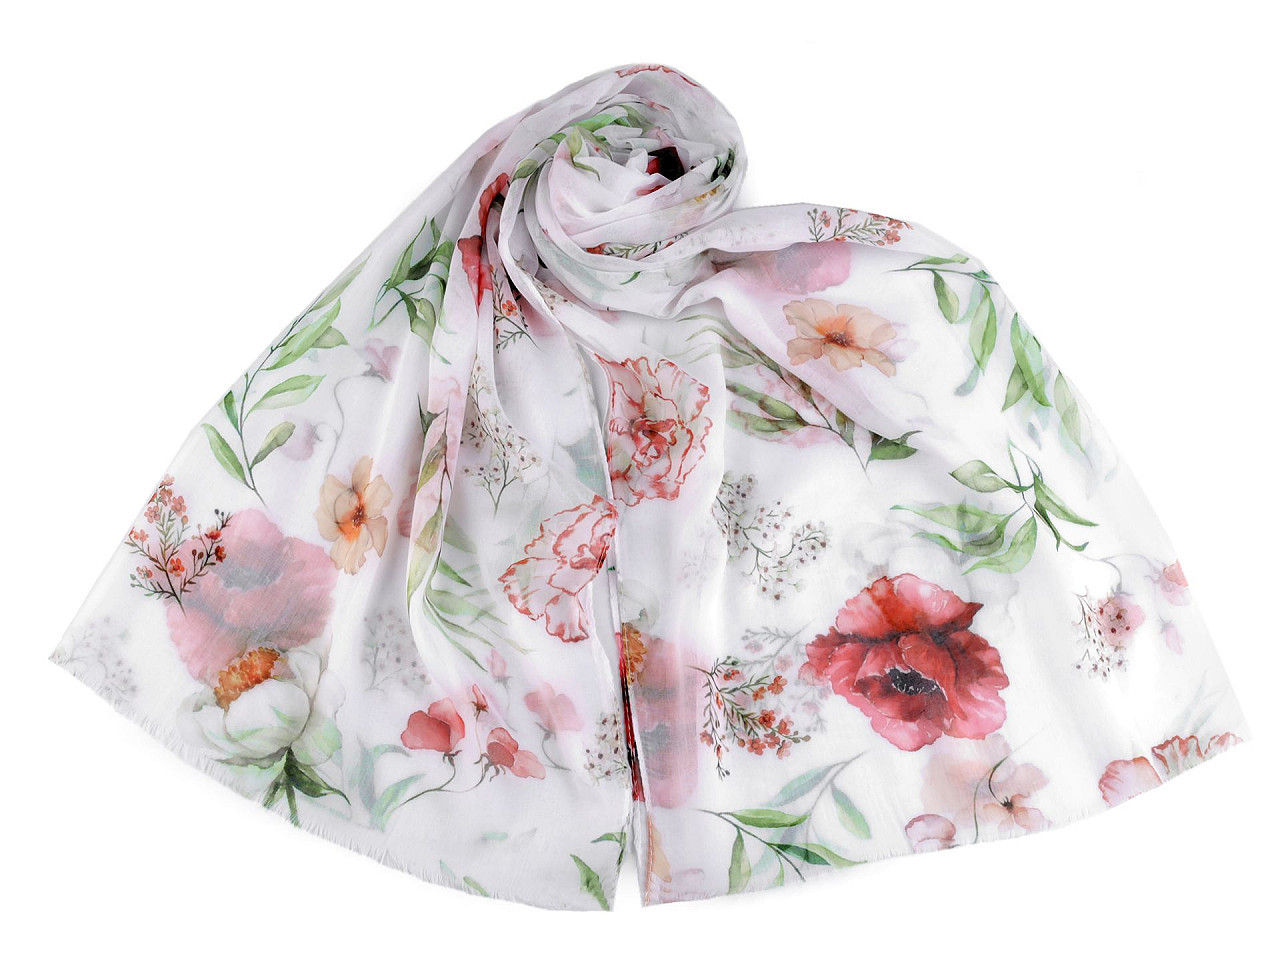 Letní šátek / šála s malovanými květy 70x180 cm, barva 1 pudrová